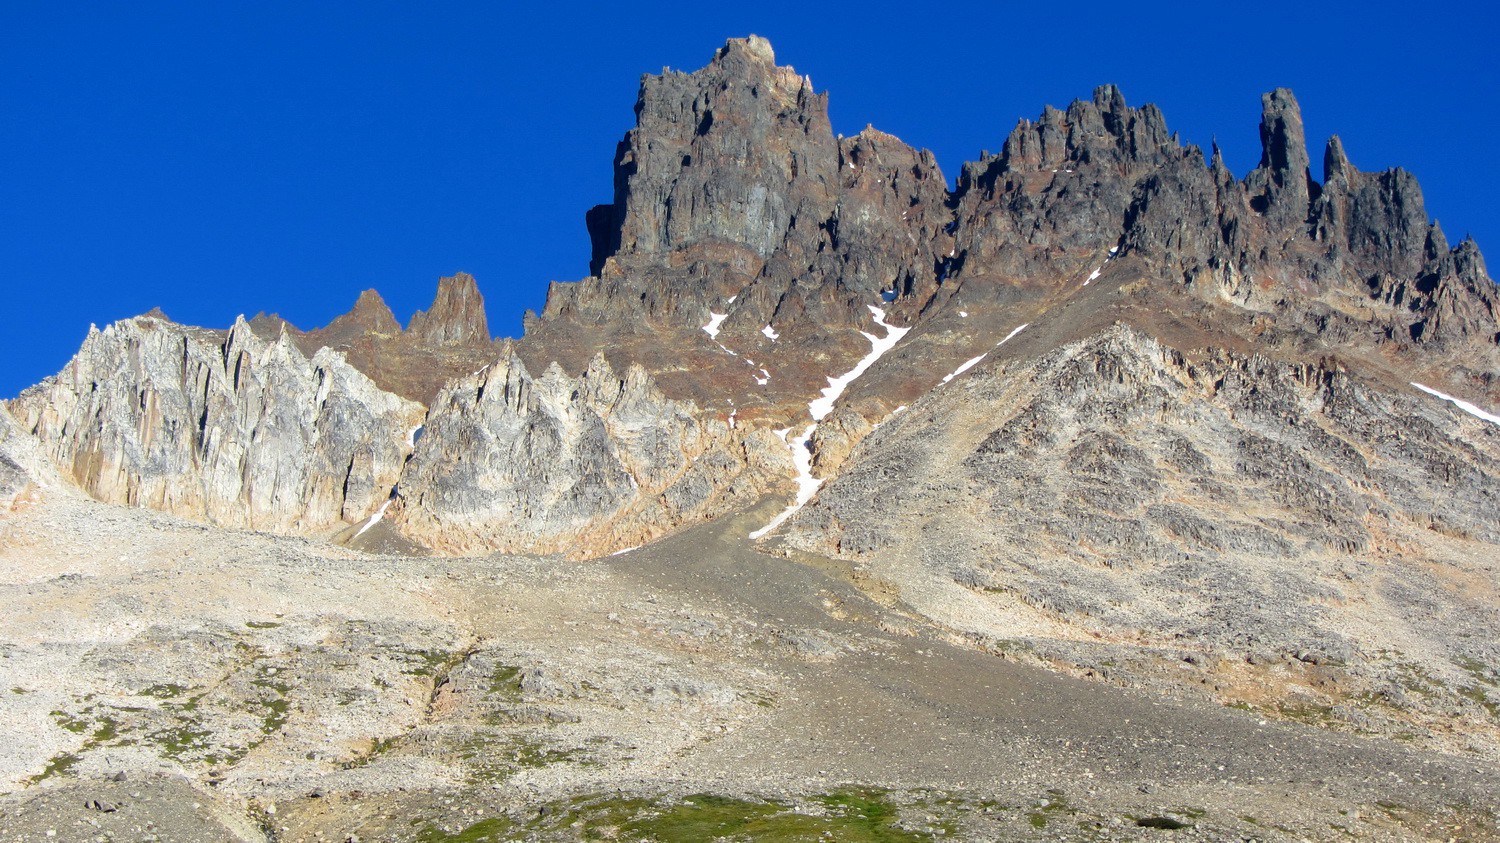 West side of Cerro Castillo